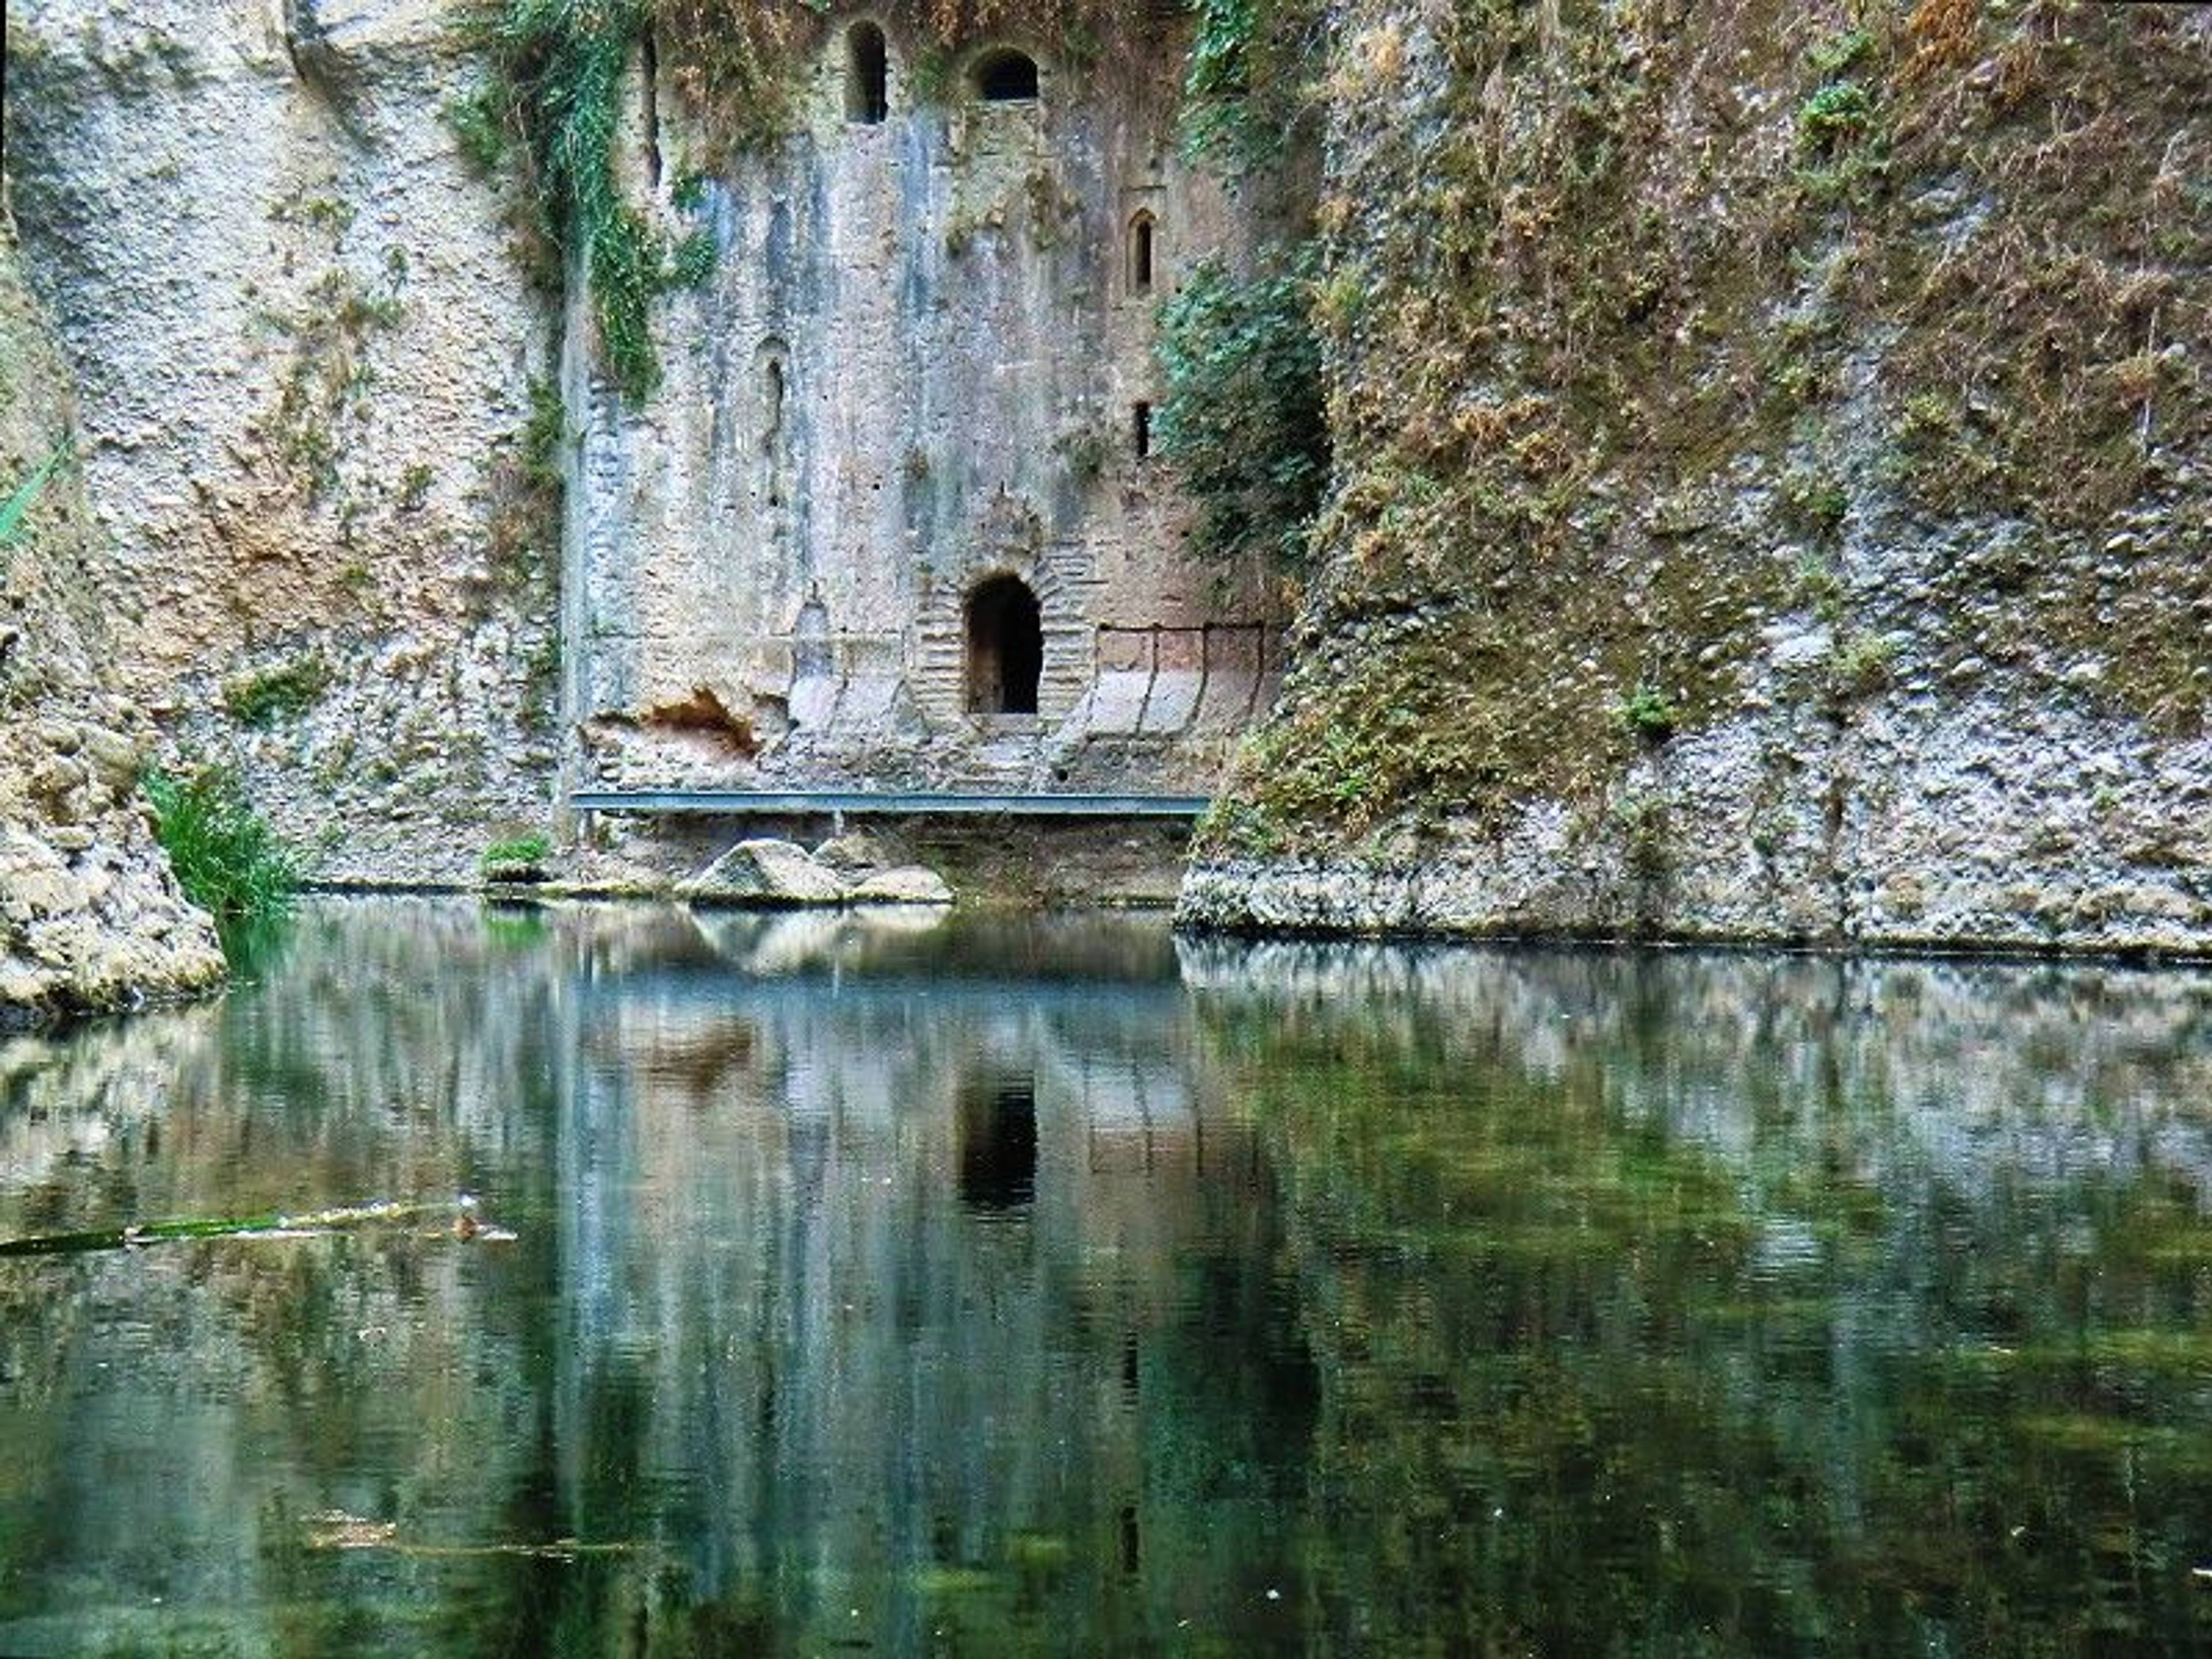 Kamienna ściana mostu w wąwozie, w której są otwory pozwalające wyjść na zewnątrz, do rzeki, która znajduje się na pierwszym planie zdjęcia. 